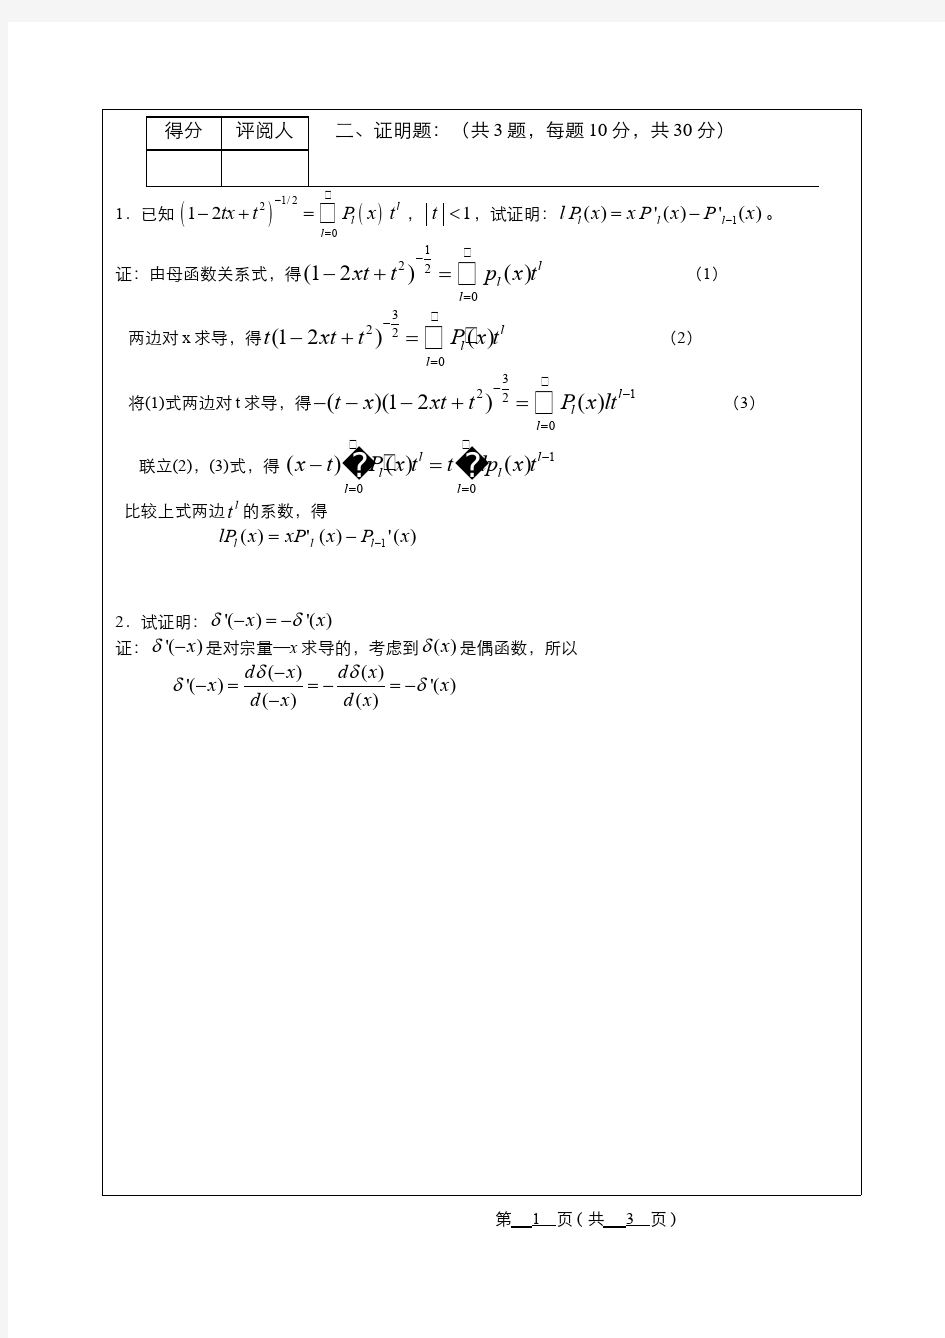 数学物理方法(4)--期末考试试卷(1)答案